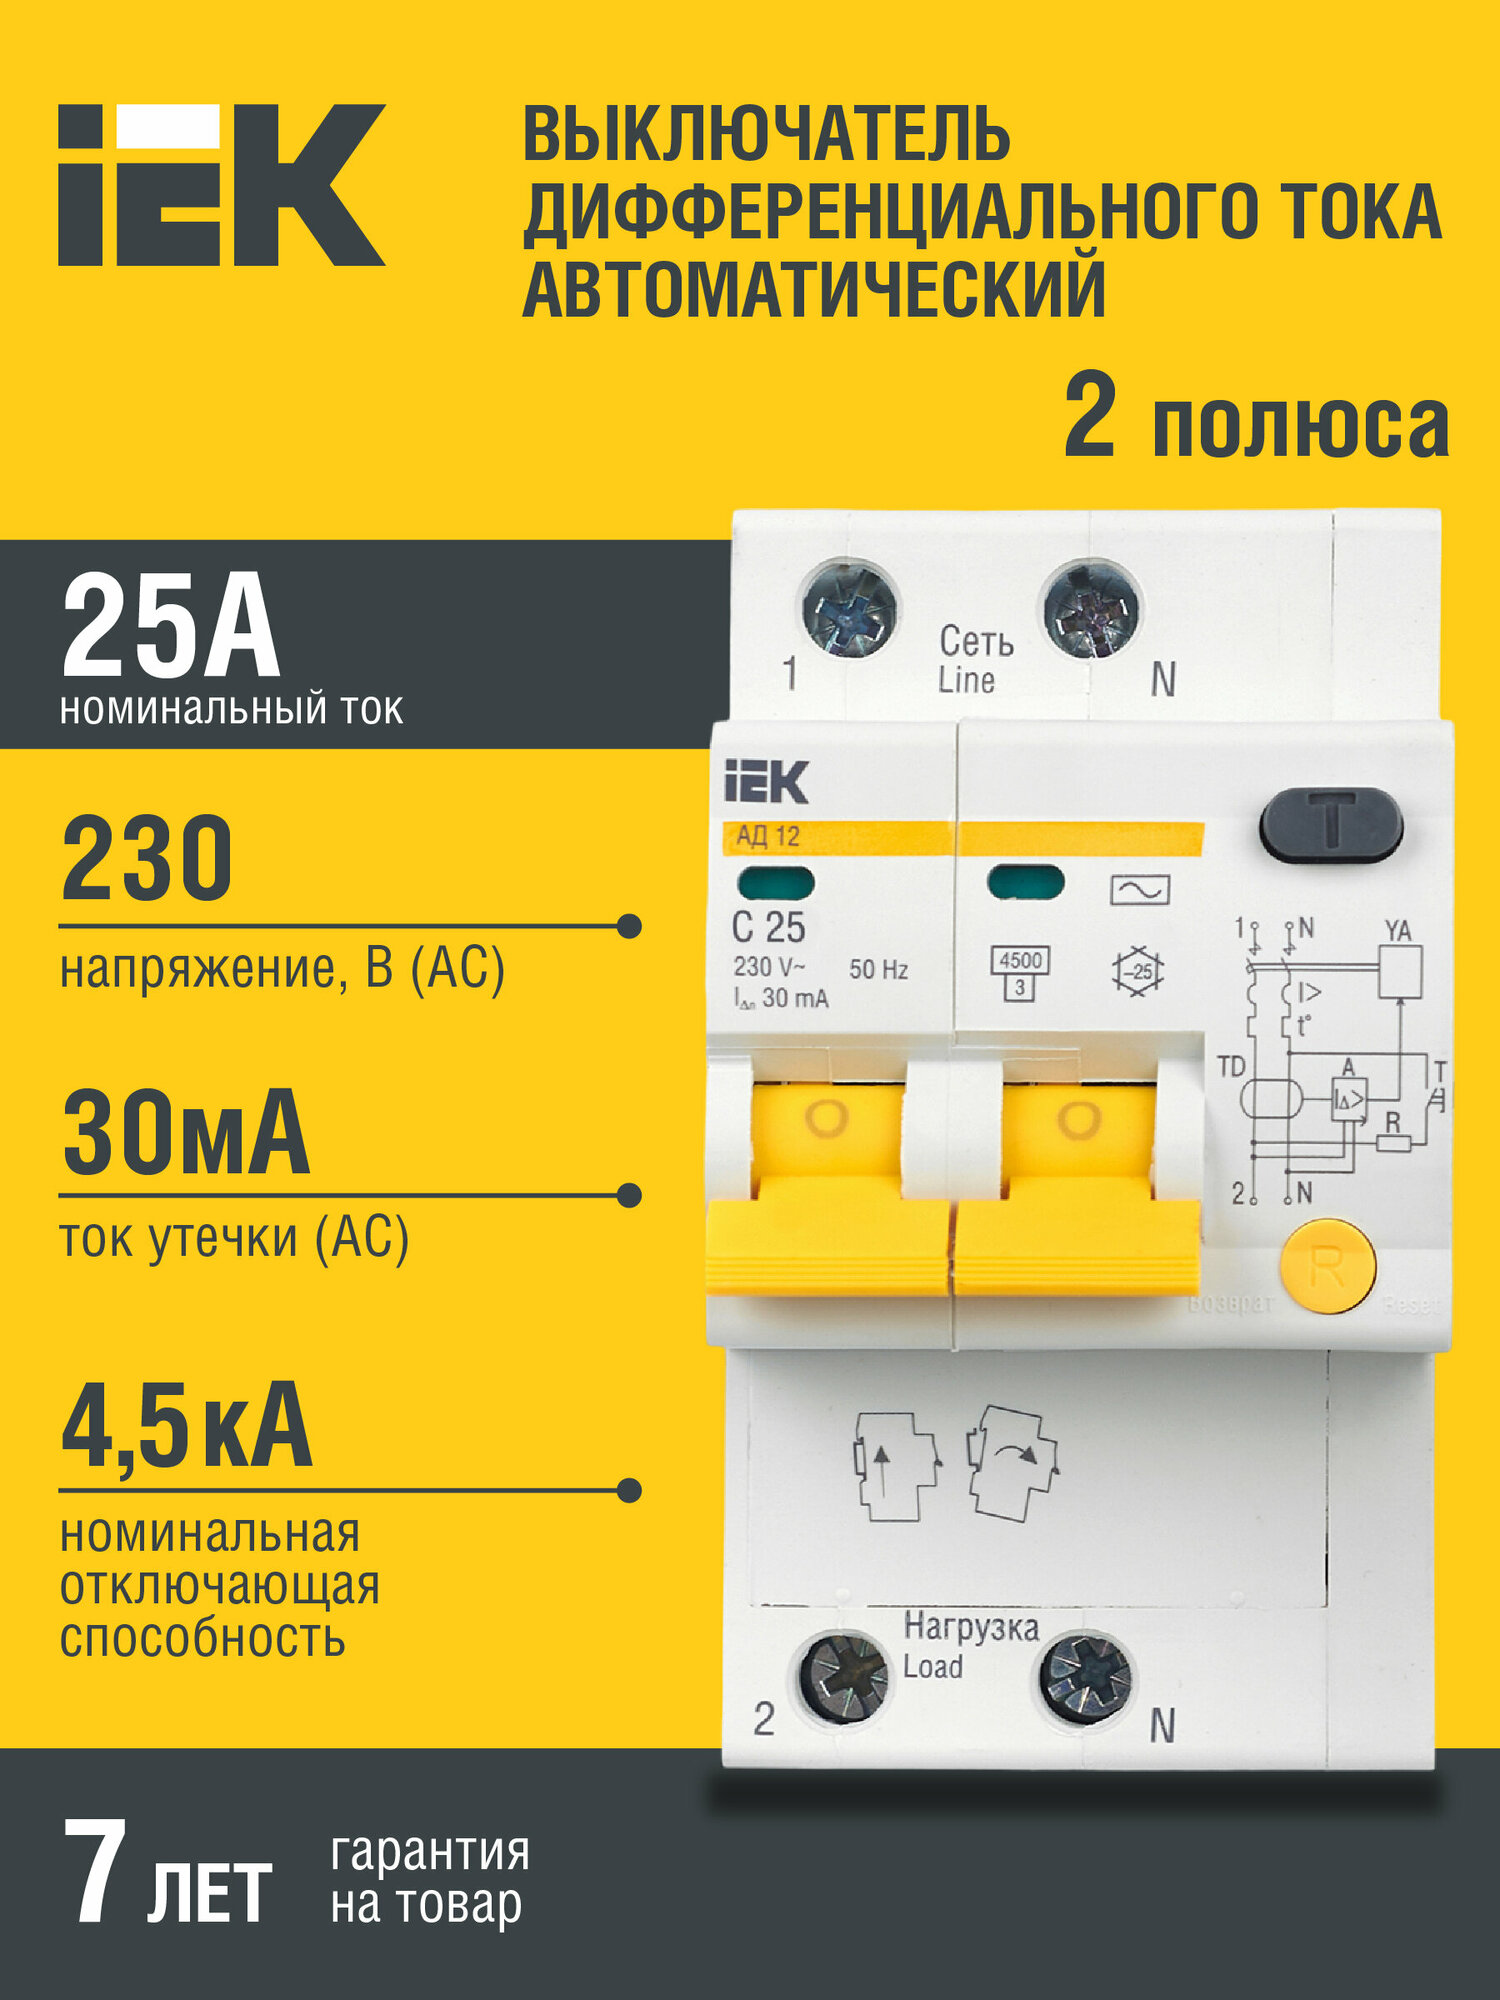 Дифференциальный автоматический выключатель АД12 2Р 25А 30мА IEK